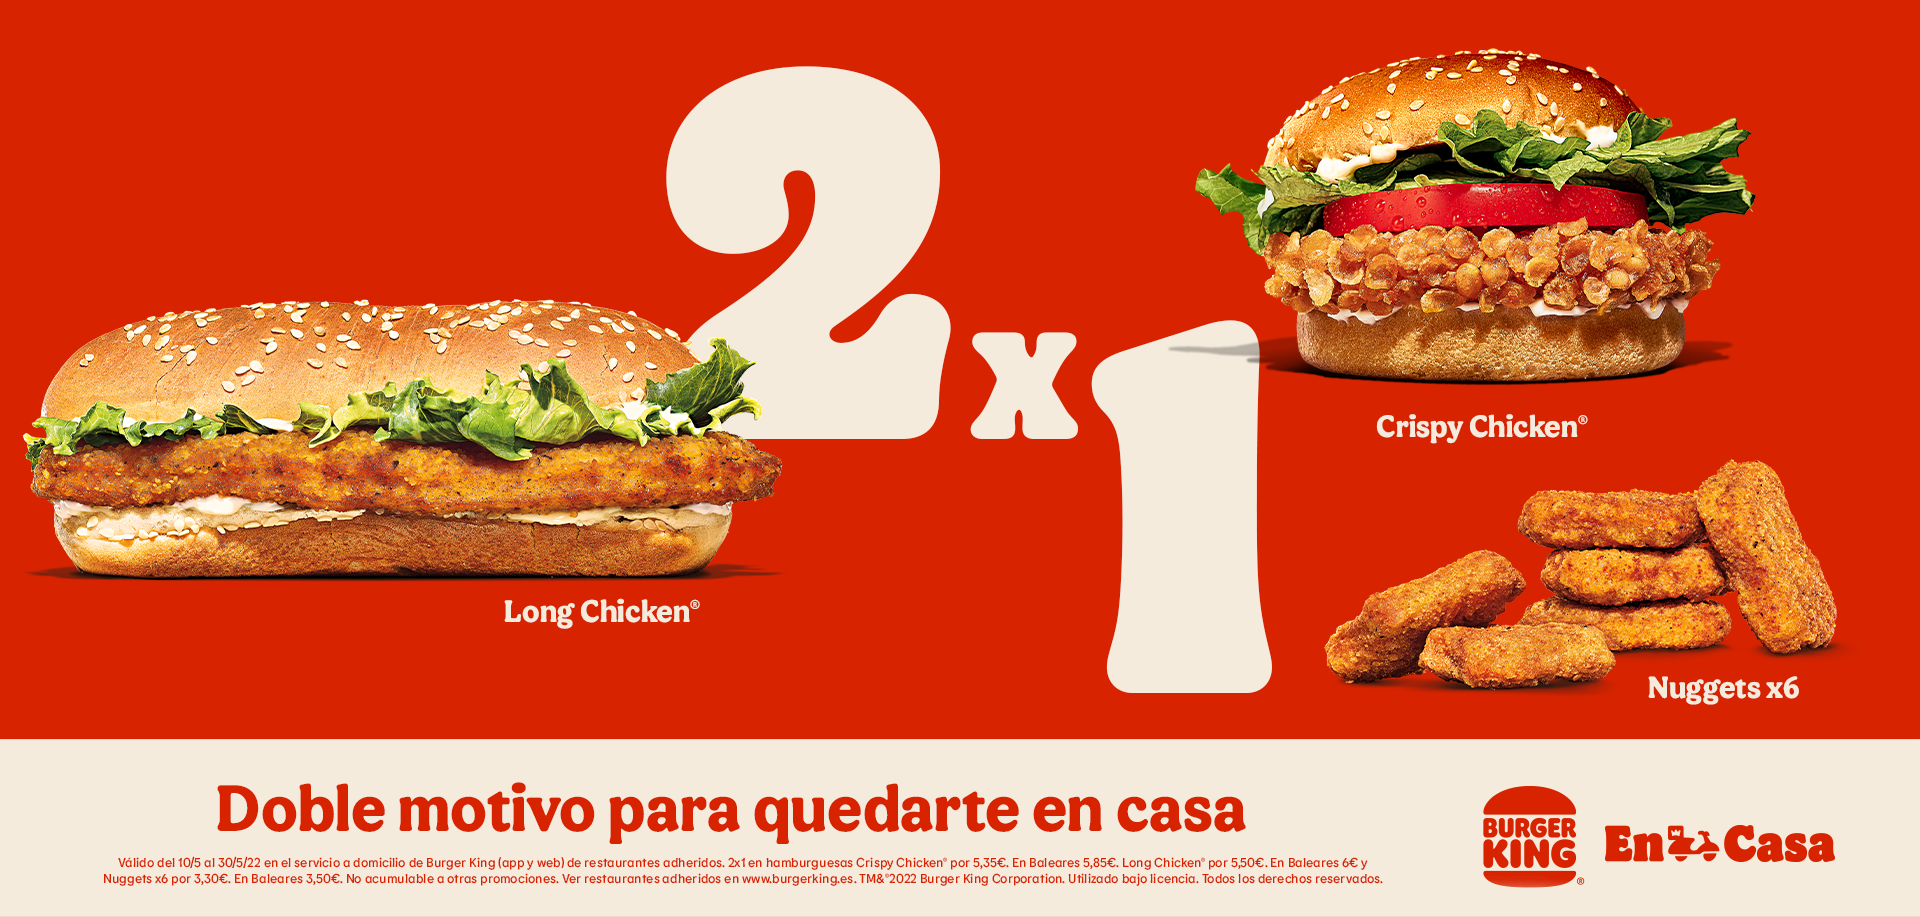 2x1 en hamburguesas Crispy Chicken por 5,35€ (en Baleares 5,85€), Long Chicken por 5,50€ (en Baleares 6€) y Nuggets x6 por 3,30€ (en Baleares 3,50€) en Burger King (oferta válida en pedidos a domicilio en la app y web de Burger King)